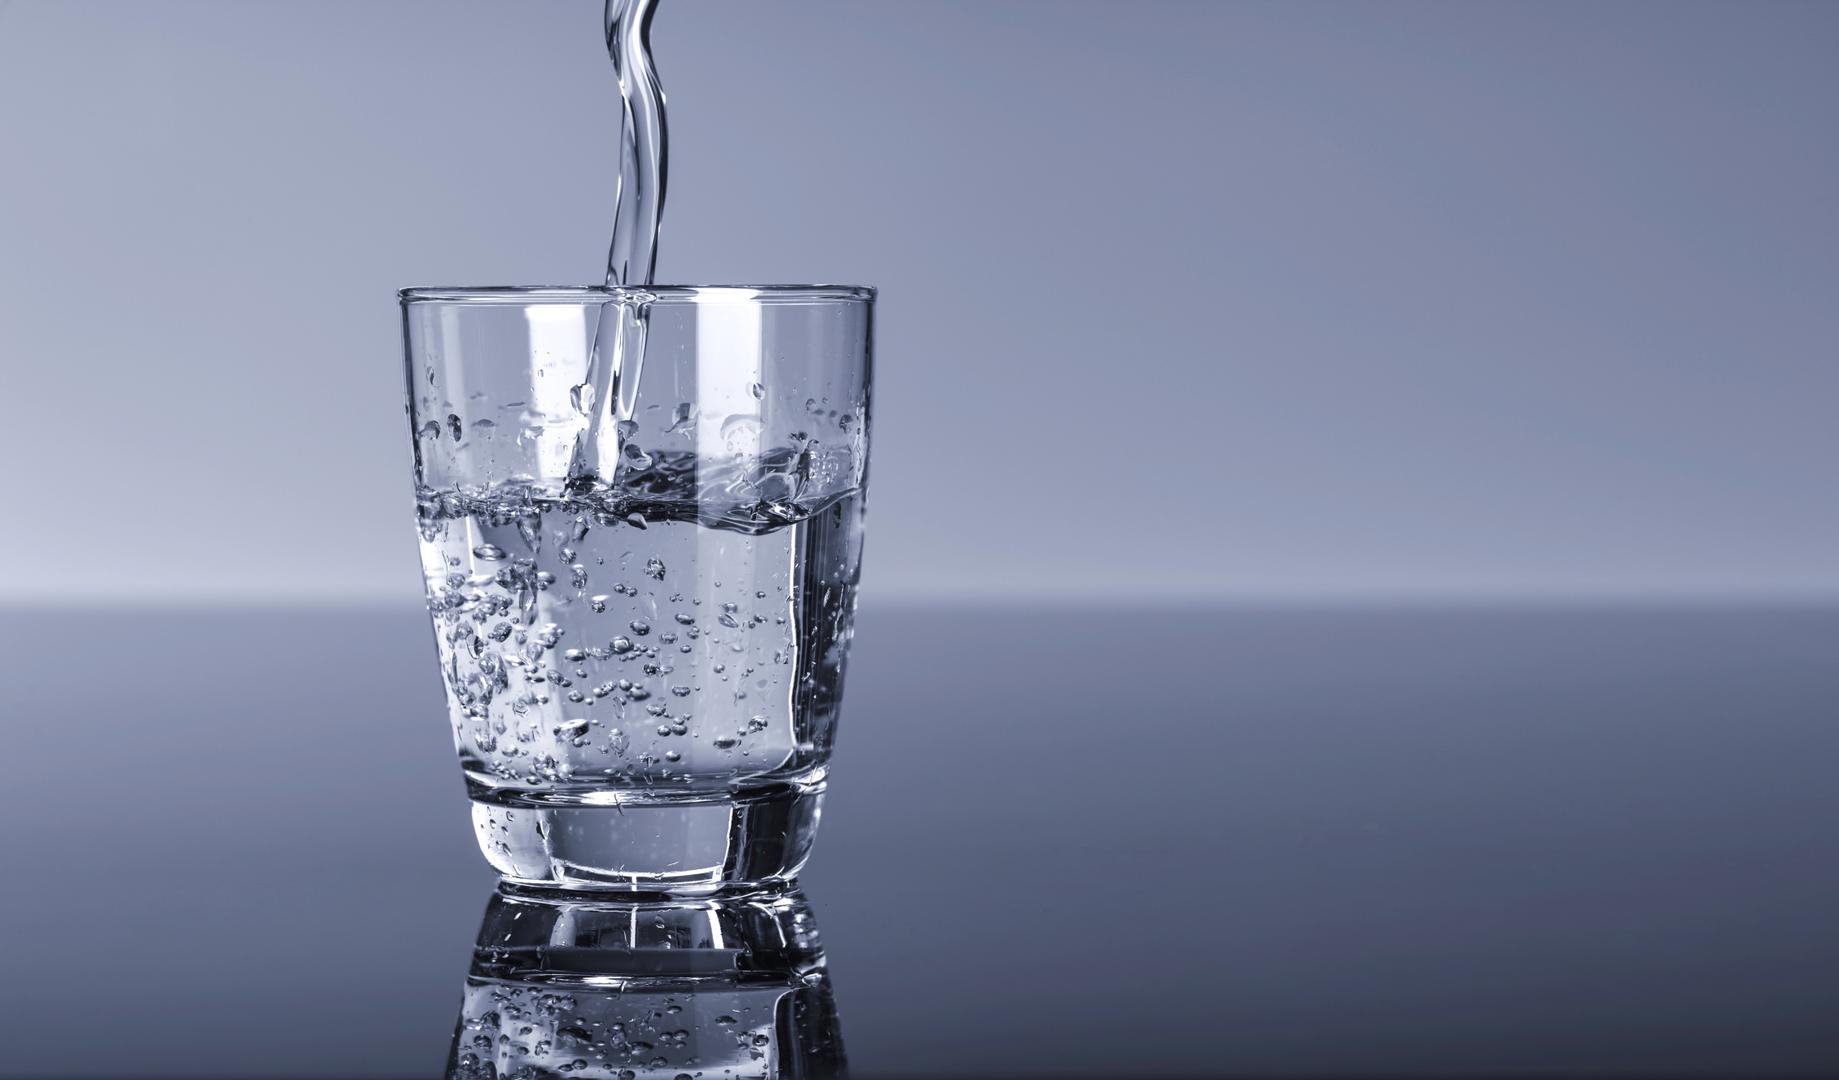 Pijete vodu i kada niste žedni - Ako posežete za vodom vrlo često, čak i ako ne osjećate žeđ, može biti znak da pretjerujete. Nemojte piti više od uobičajenih 8 čaša na dan, osim ako se ne bavite nekom intenzivnijom tjelovježbom. 